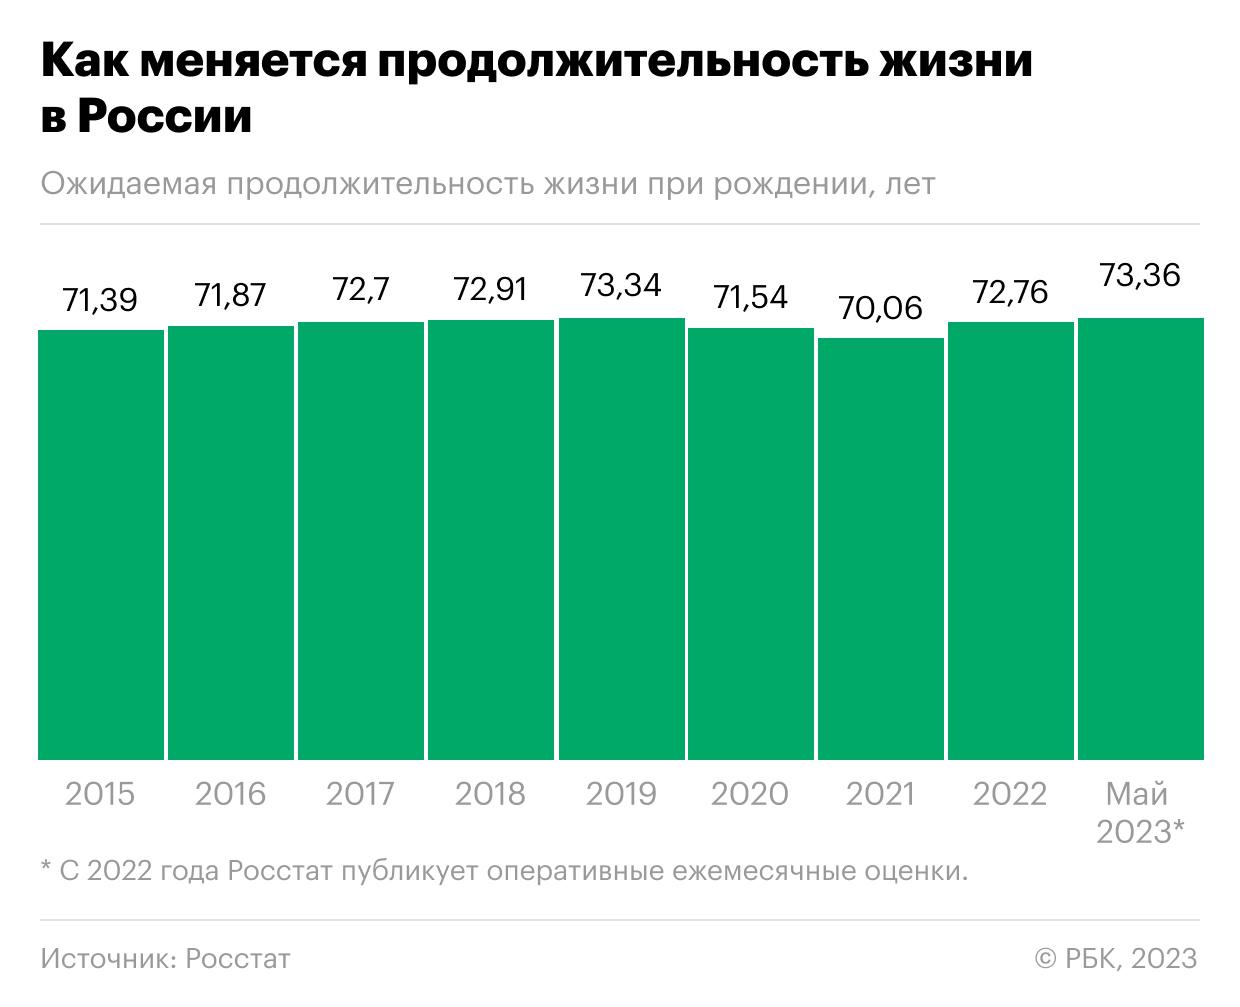 Как продолжительность жизни в России превысила доковидную. Инфографика